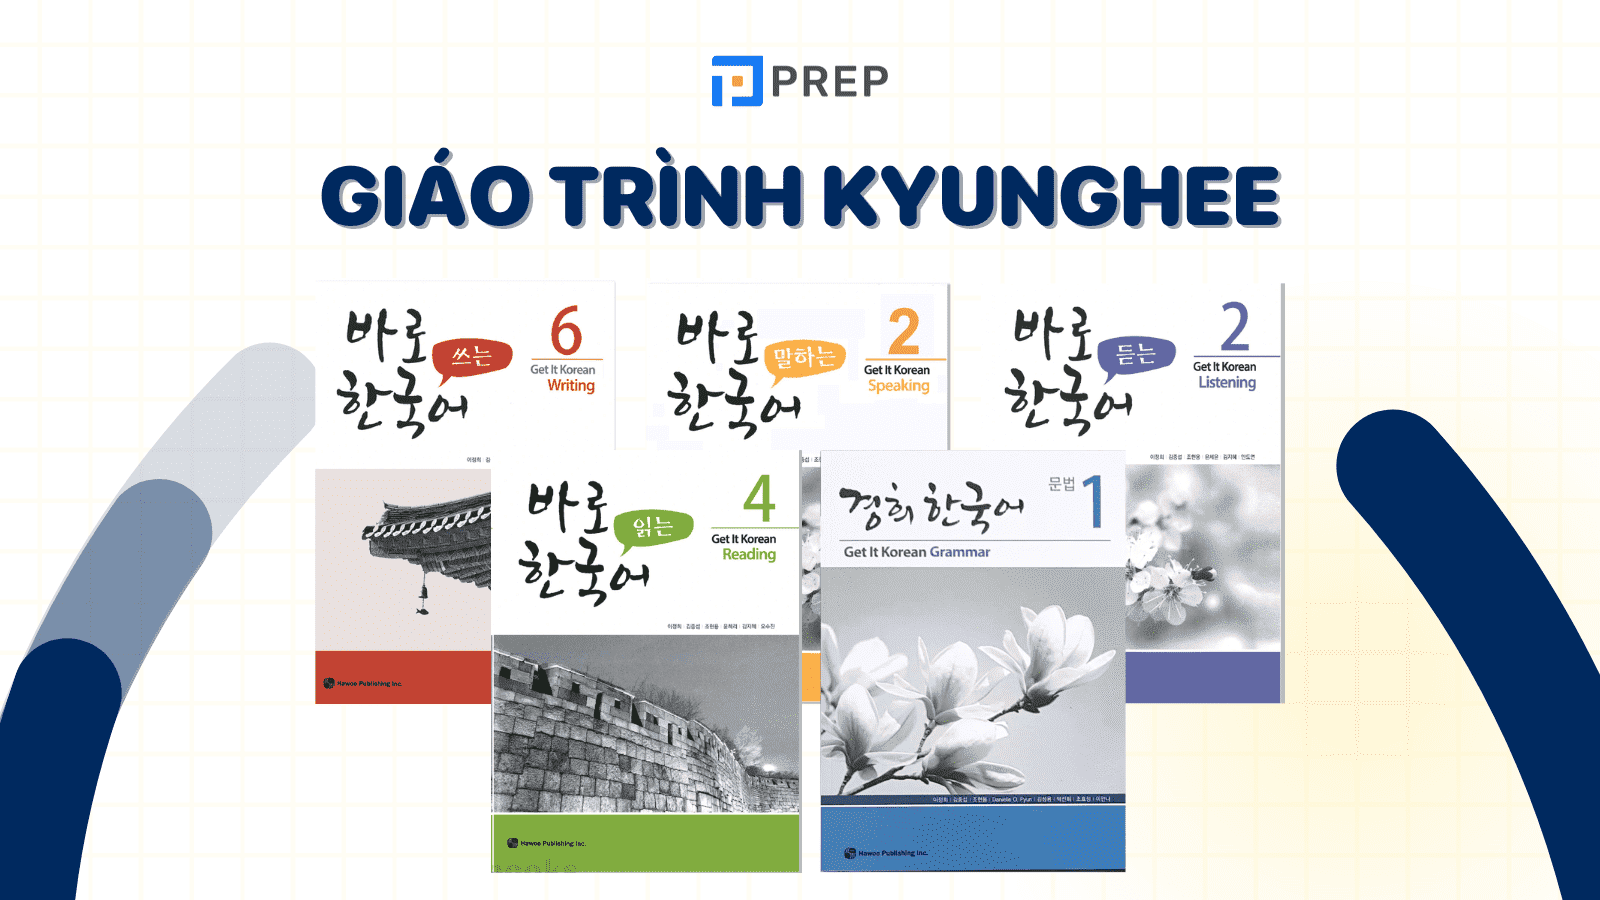 Bộ giáo trình Kyunghee - Chinh phục tiếng Hàn mọi cấp độ dễ dàng!